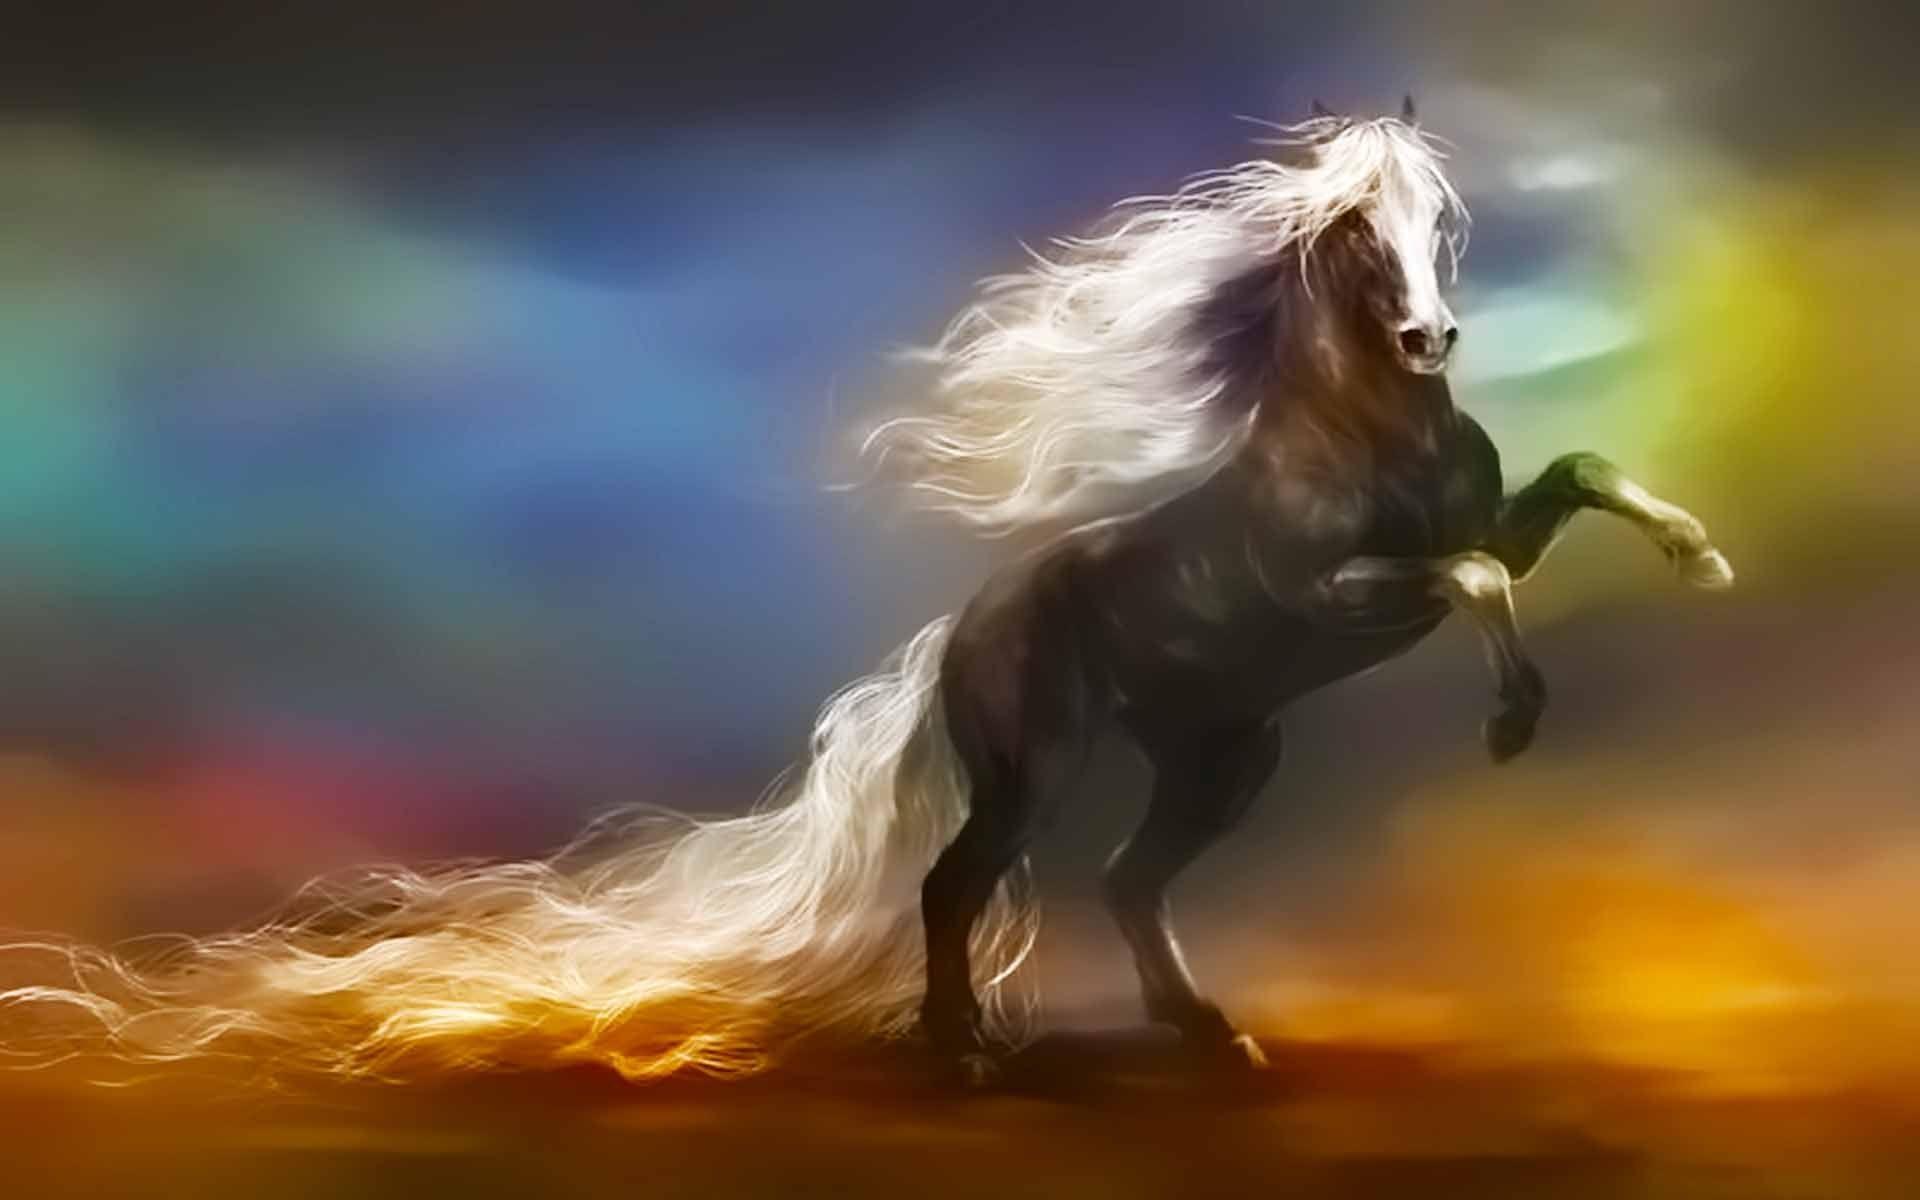 Dù bạn là một tín đồ yêu ngựa hay chỉ đơn giản là muốn thưởng thức một chút không gian mơ mộng, ngựa huyền bí trong fantasy horse wallpapers chắc chắn sẽ làm bạn hài lòng. Hãy nhấn vào hình ảnh để khám phá thêm nhé.